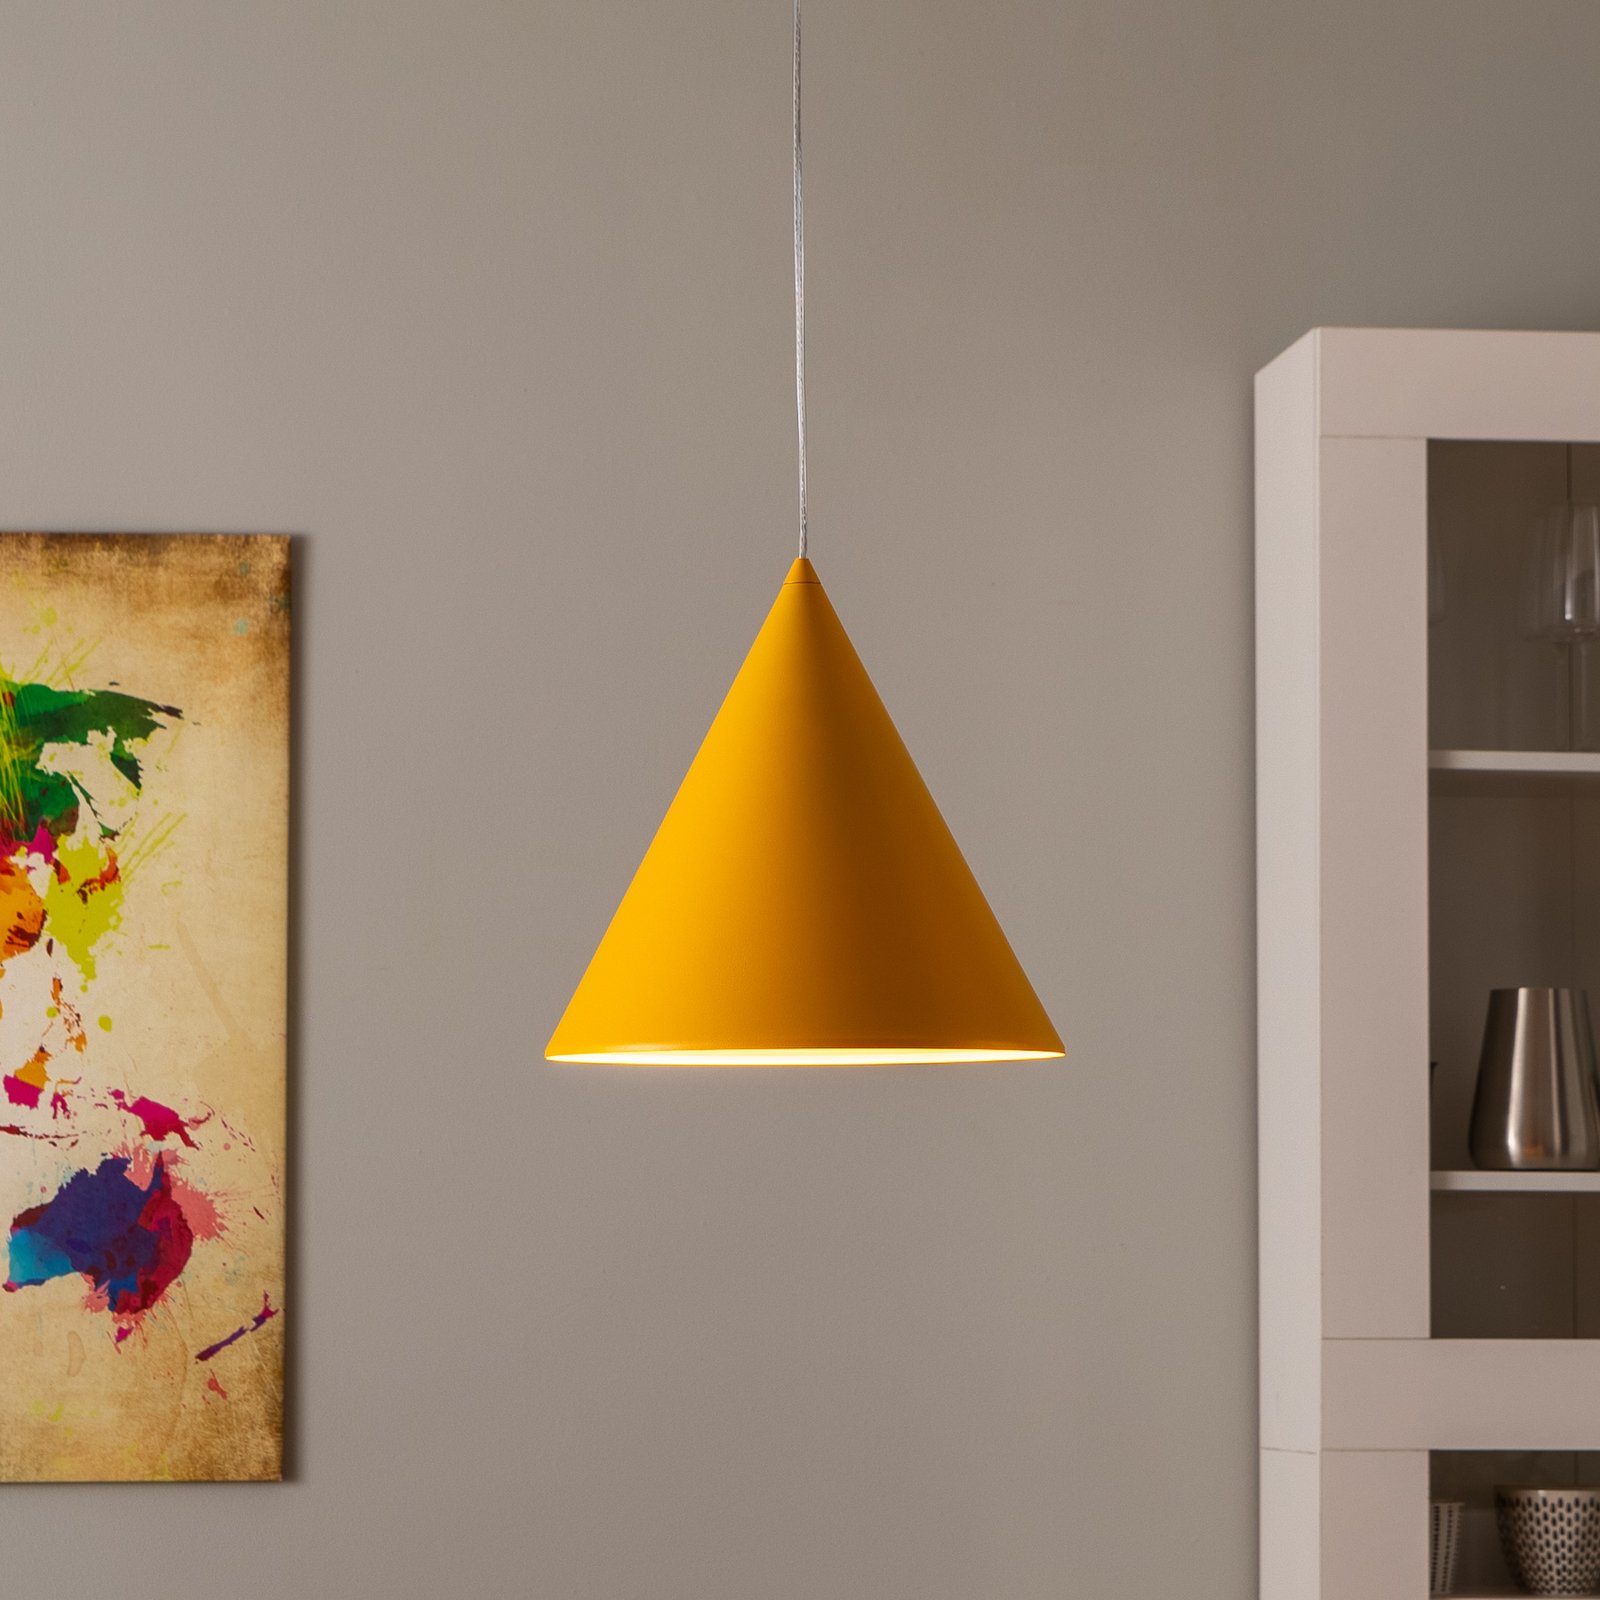 Závěsné svítidlo Cono, jedno světlo, Ø 32 cm, žlutá barva